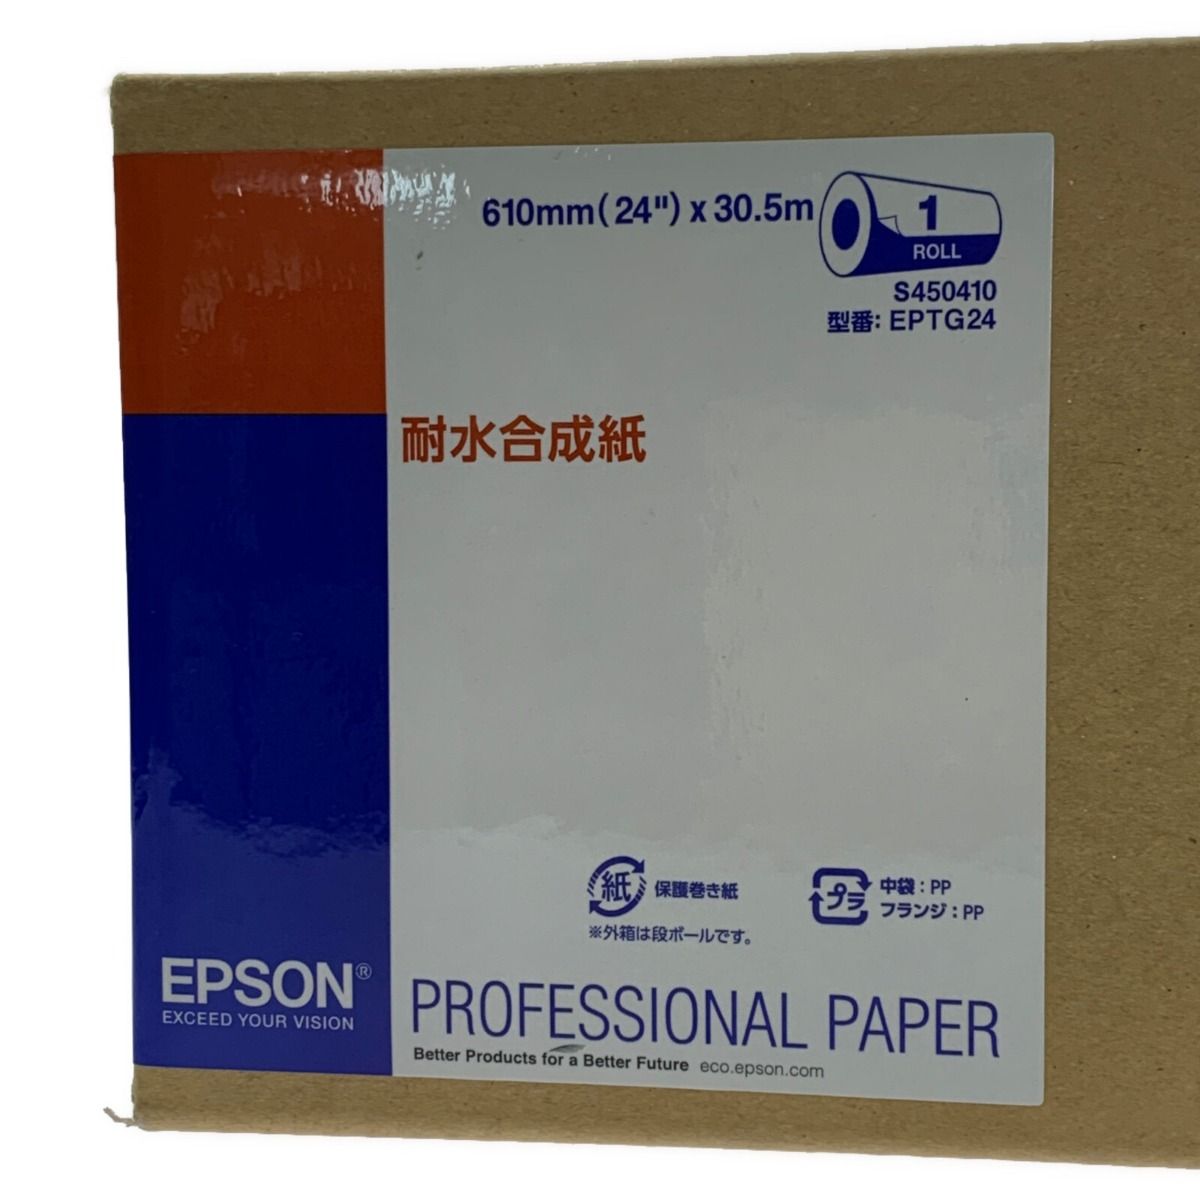 EPSON エプソン EPSON EPTG24《 耐水合成紙ロール 》24インチ×30.5m EPTG24 